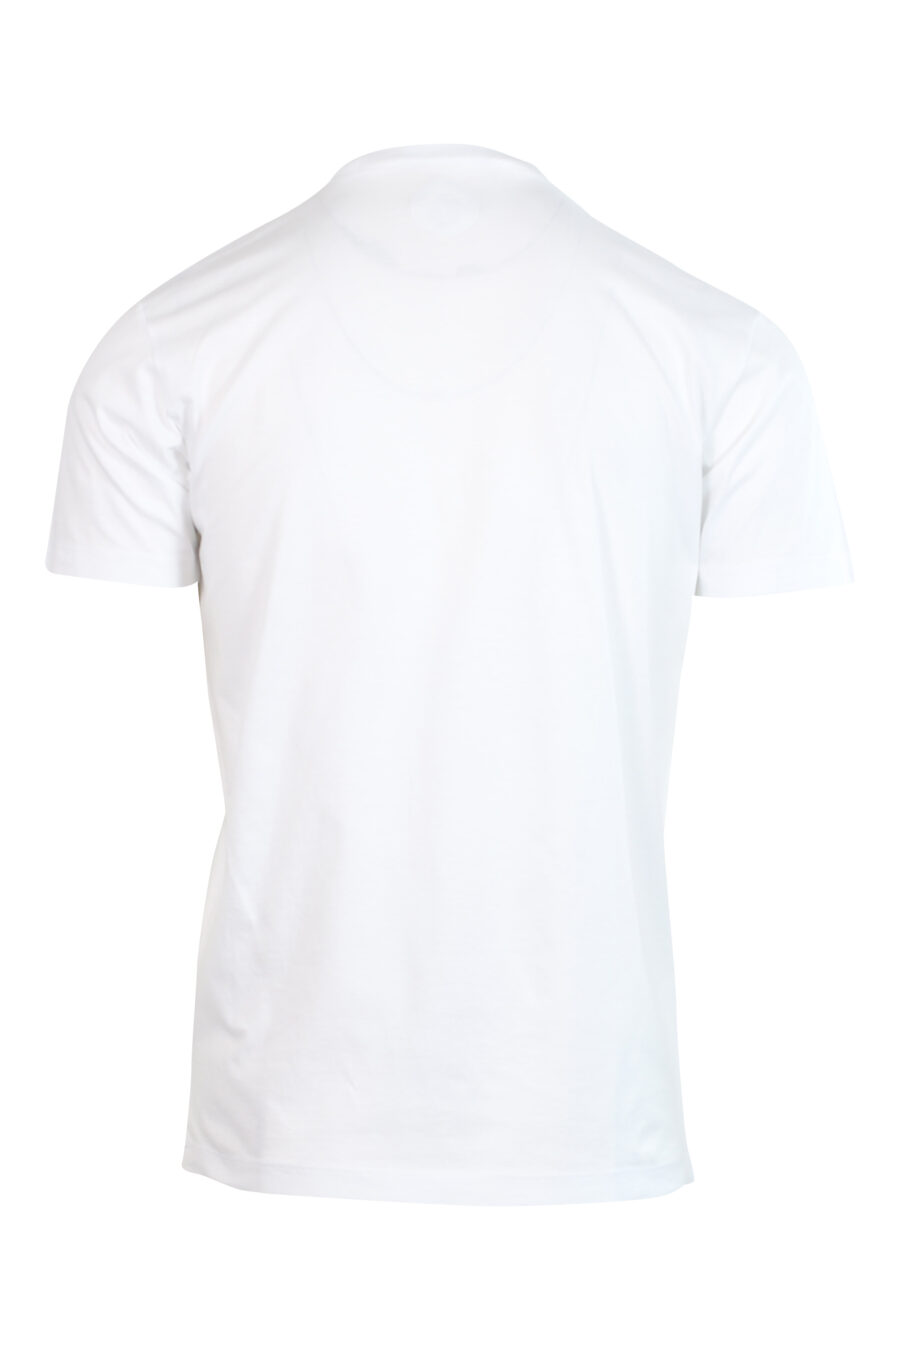 T-shirt branca com logótipo vermelho - 8052134945995 2